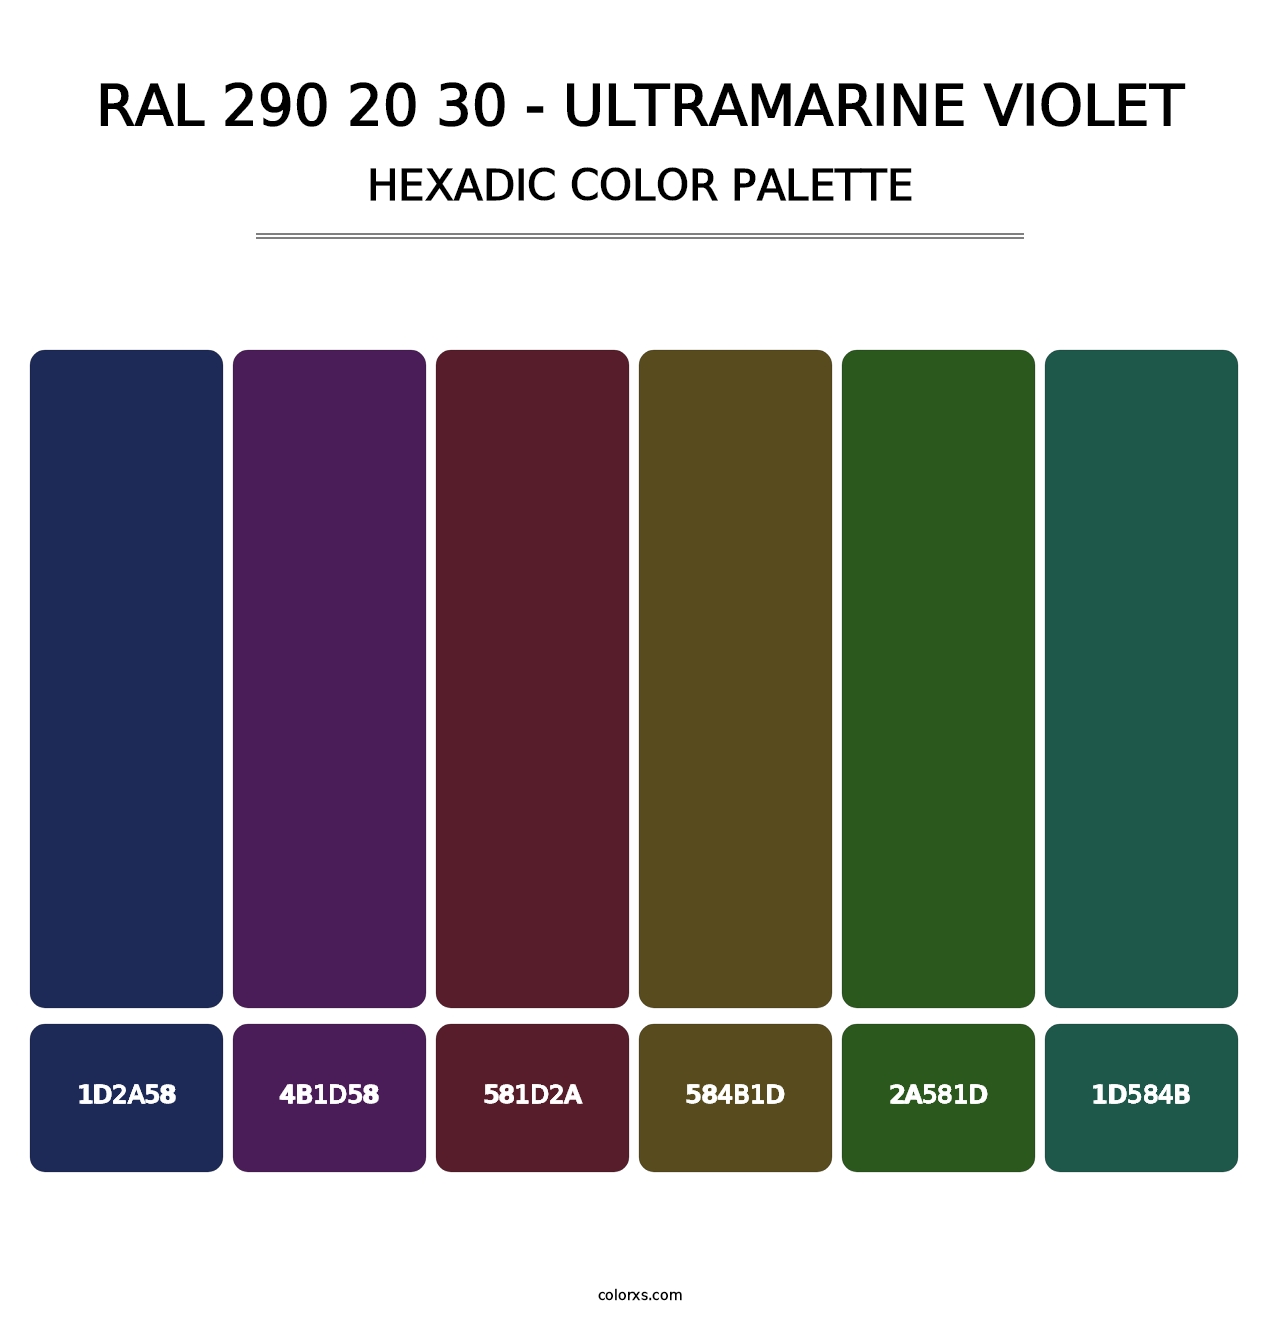 RAL 290 20 30 - Ultramarine Violet - Hexadic Color Palette